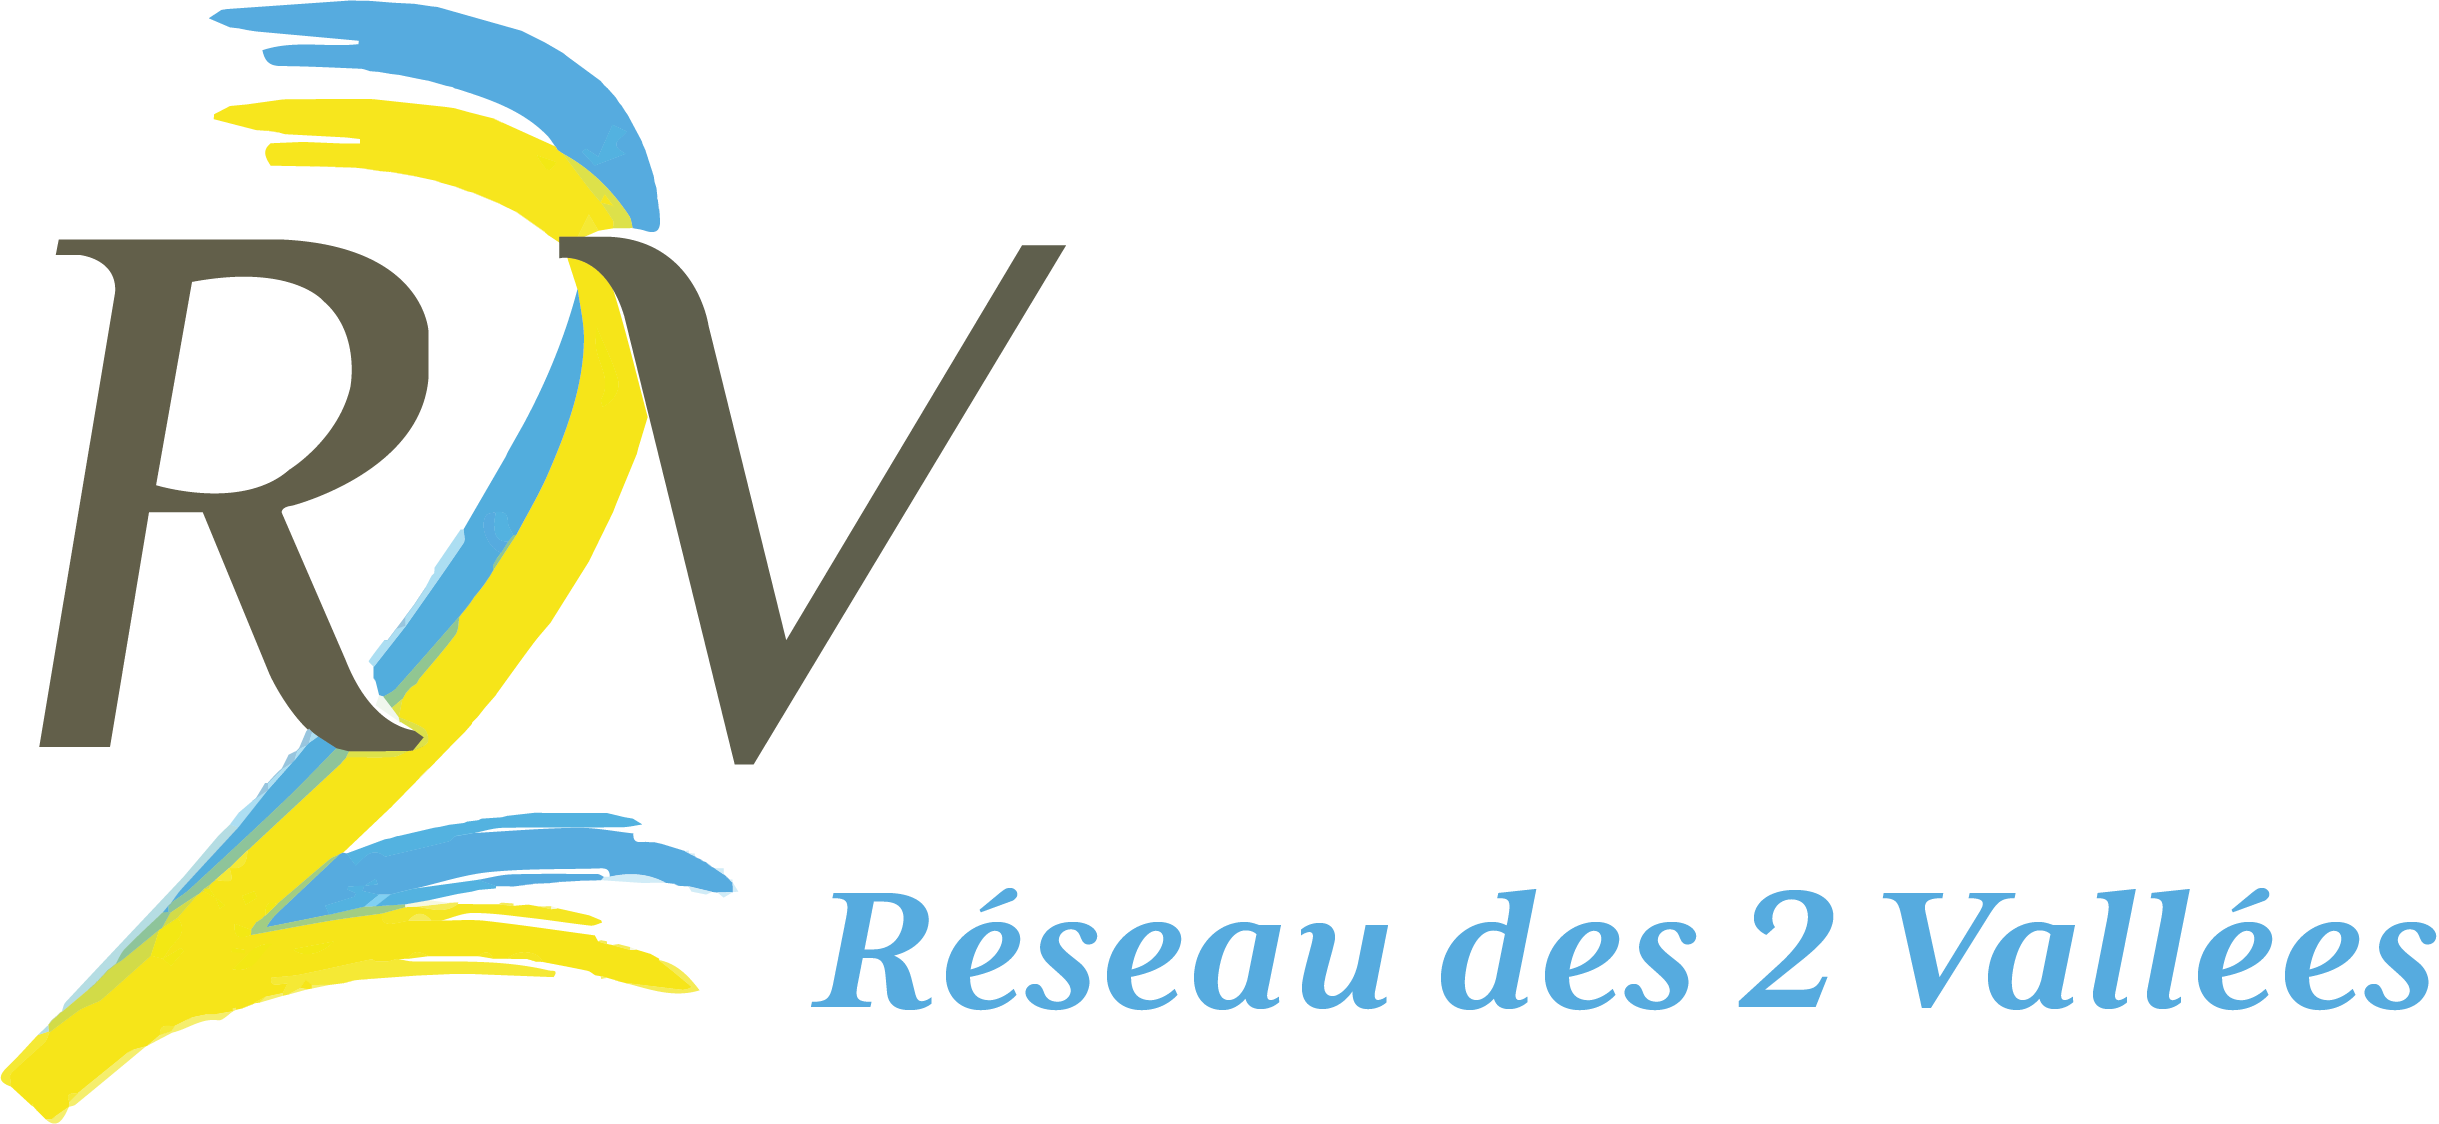 Logo - R2V 4.png